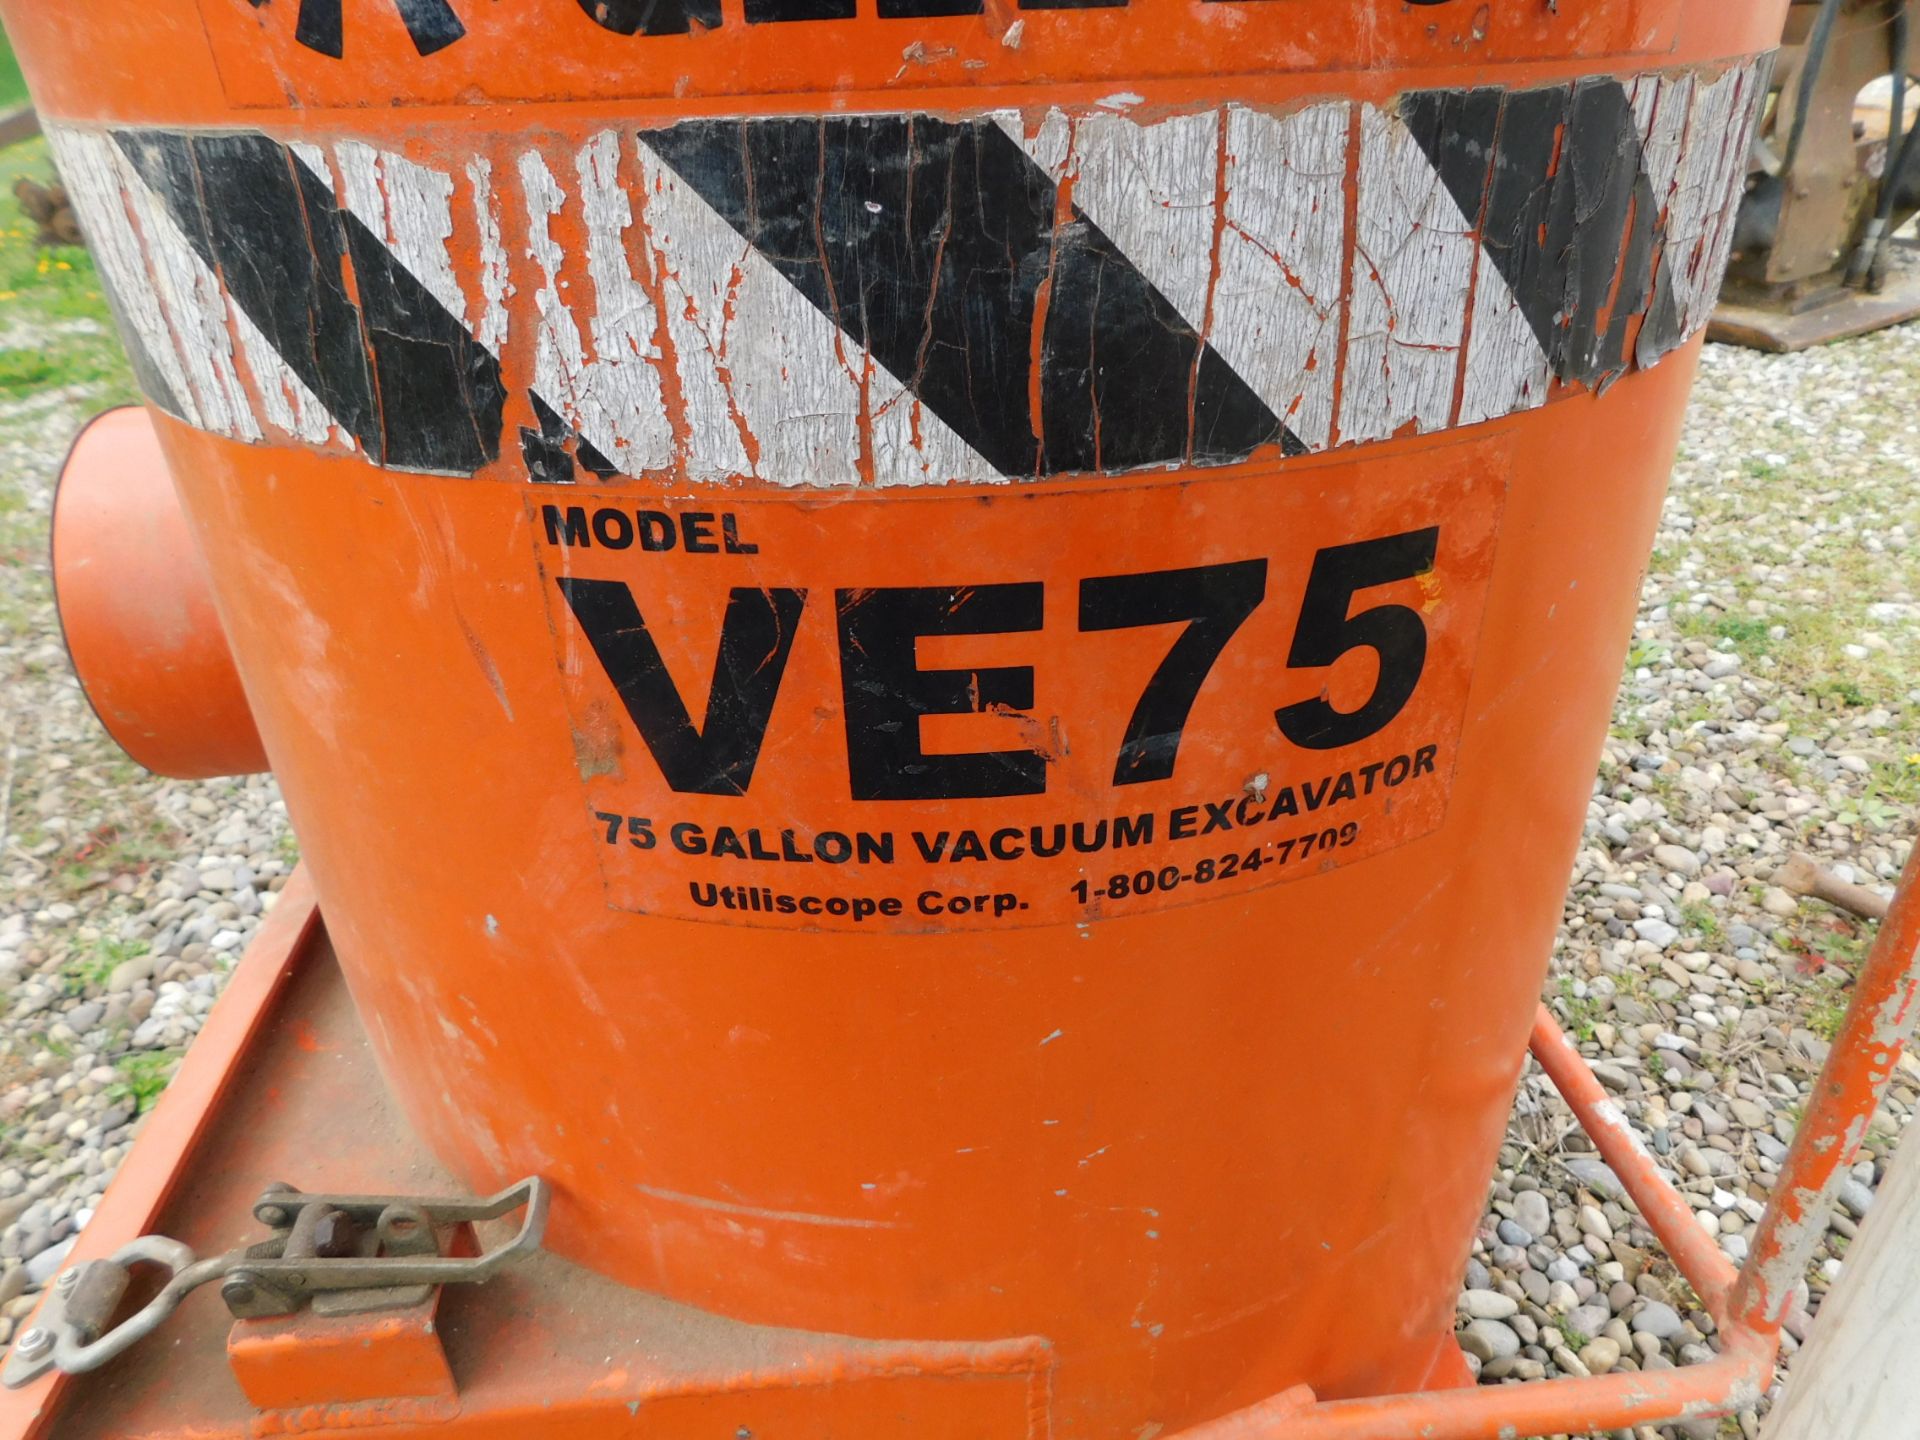 Utilivac Model VE75, 75 Gallon Portable Vacuum Excavator - Bild 2 aus 7